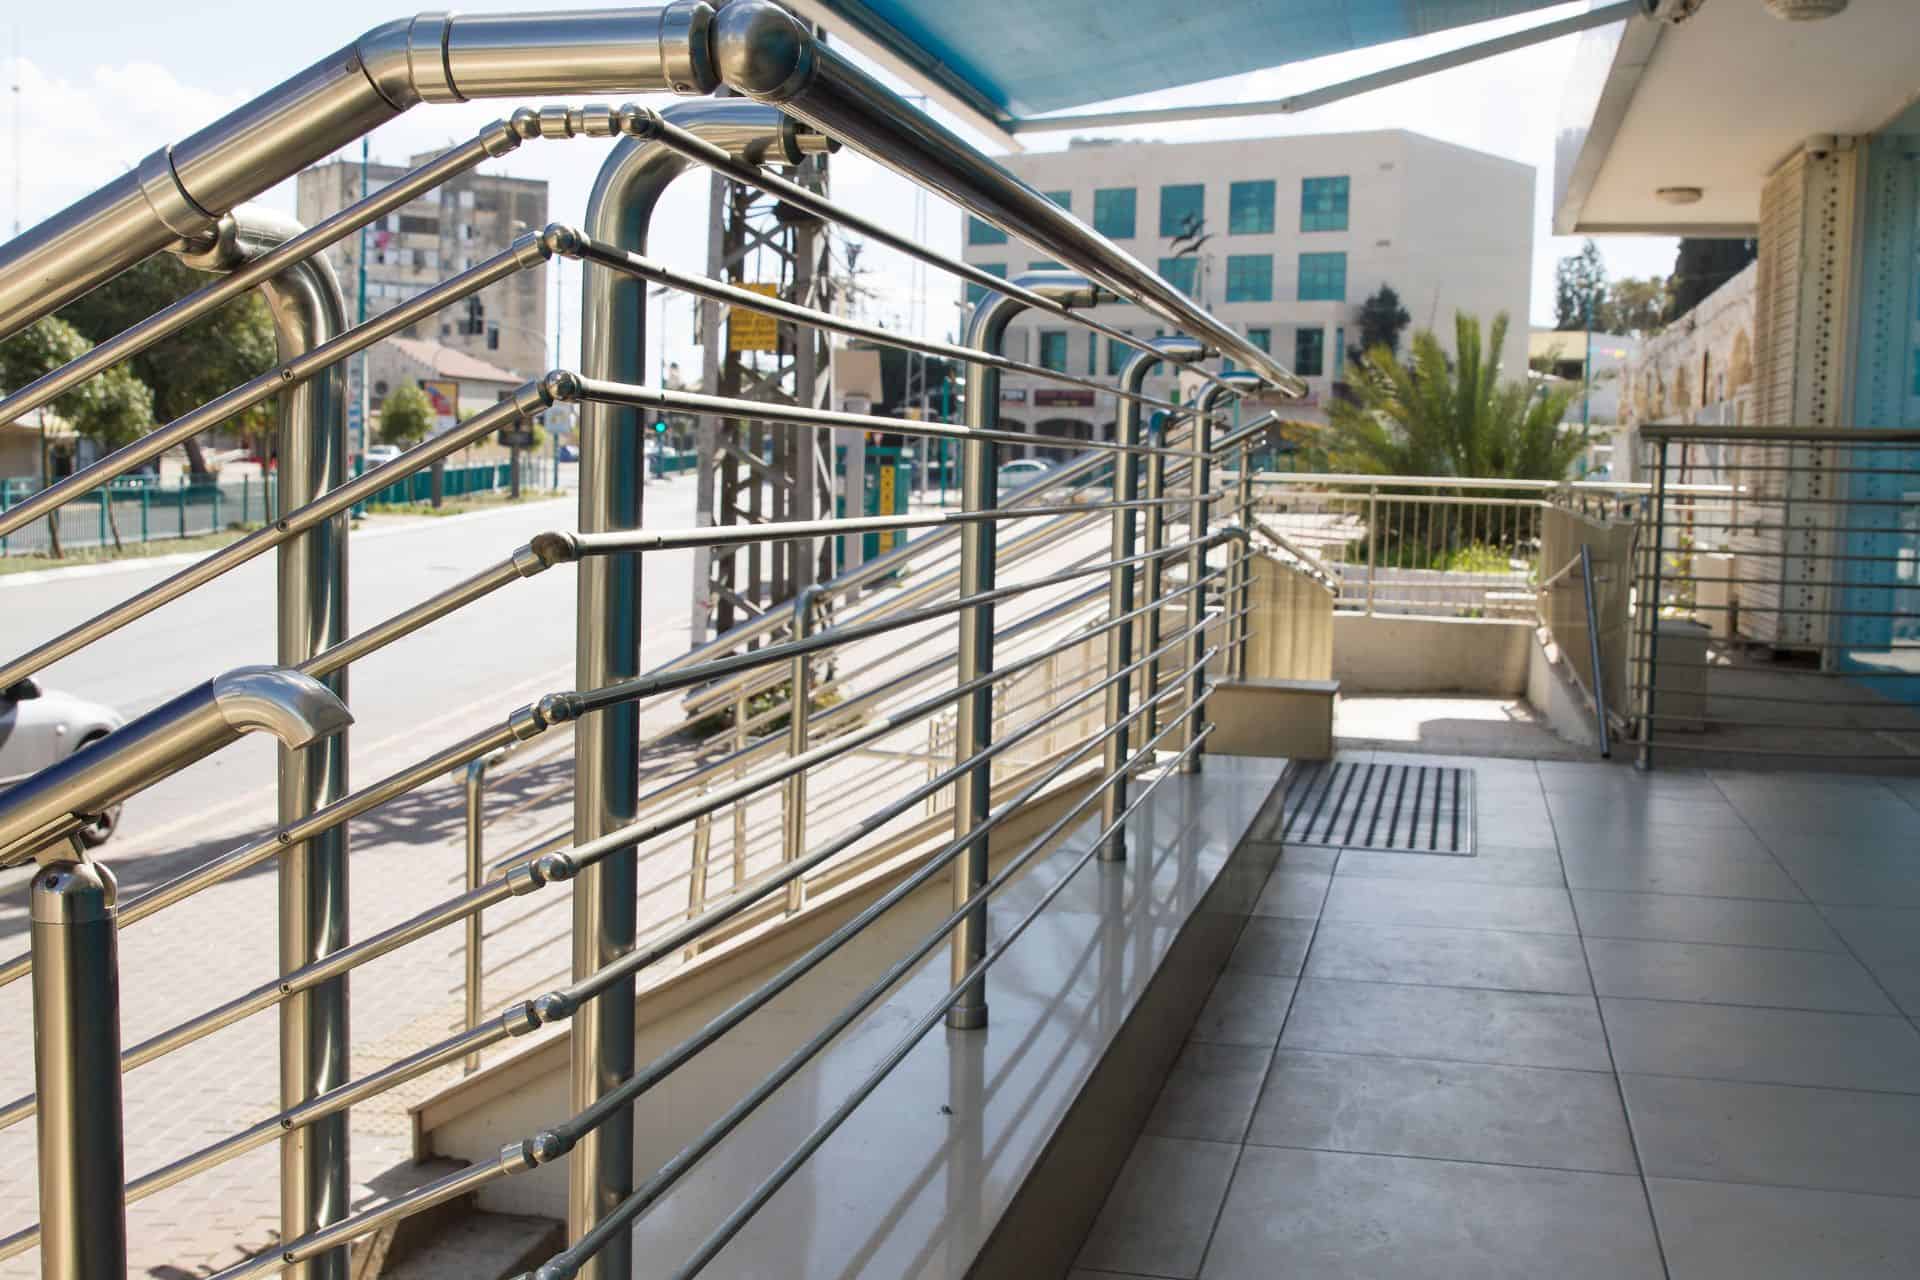 Guardrails & Hand-railing